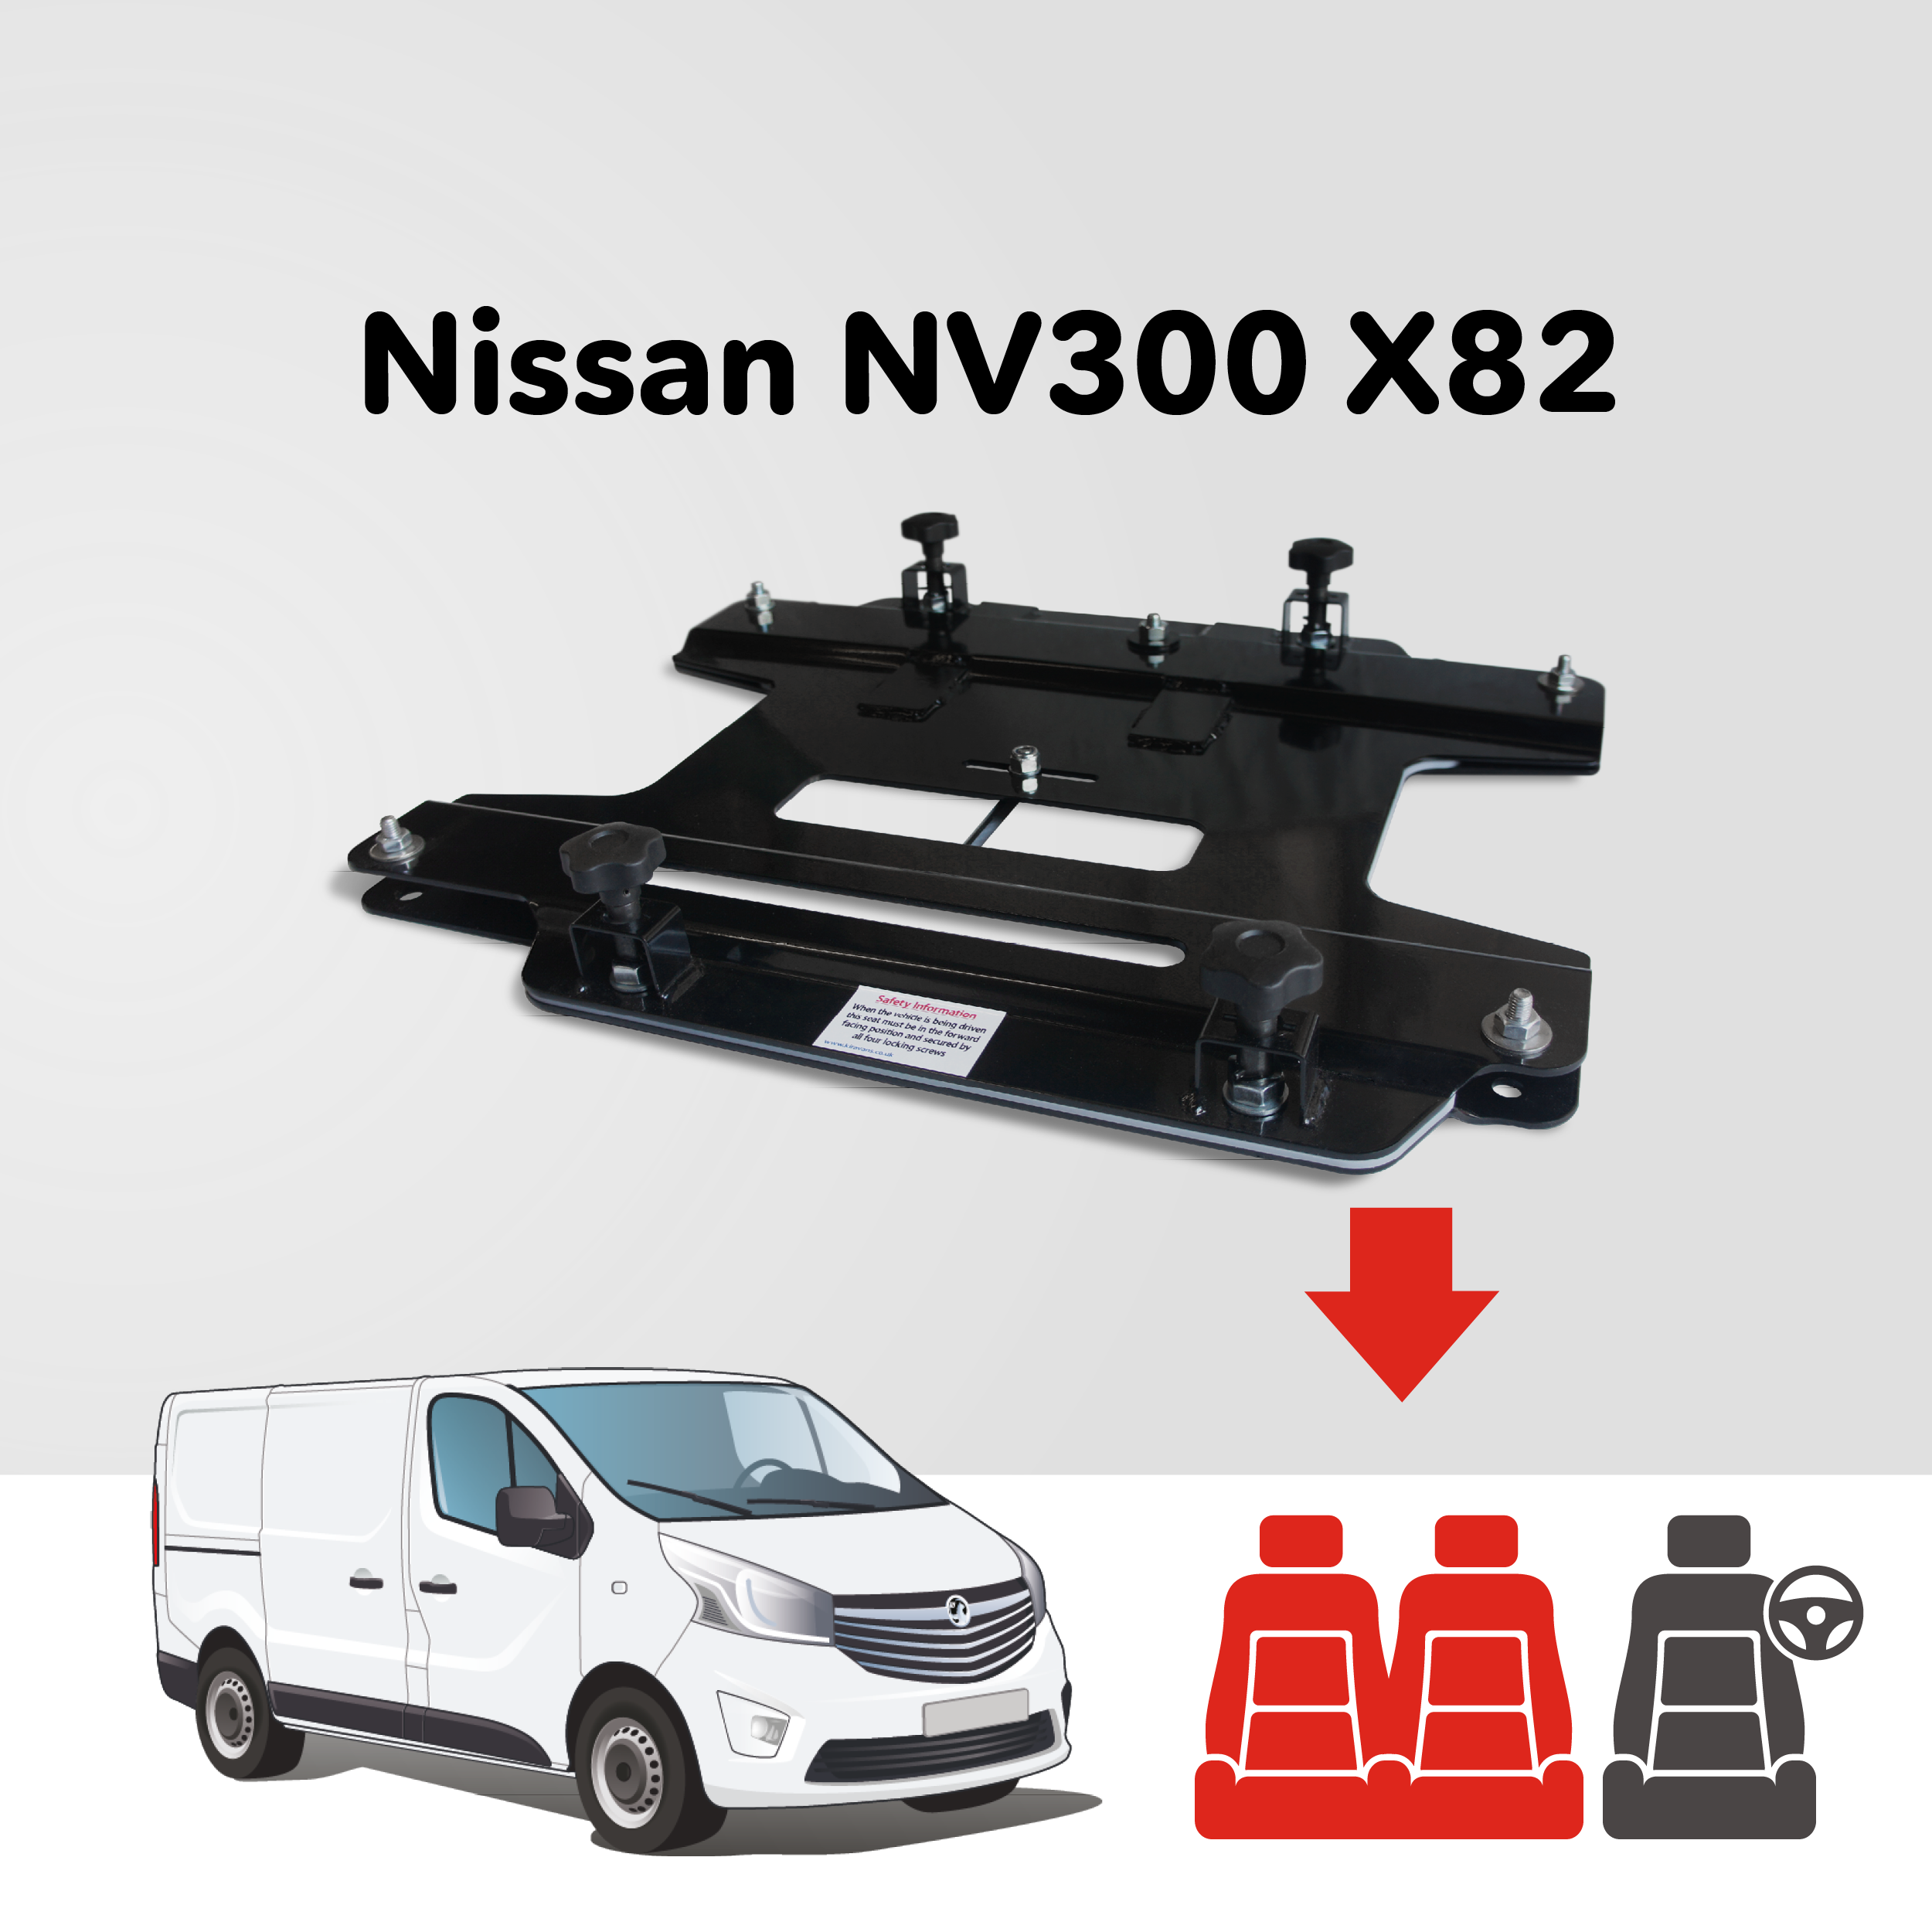 Base tournante double banquette Kiravans - Nissan NV300/Primastar 2014+ (UE - Conduite à gauche)